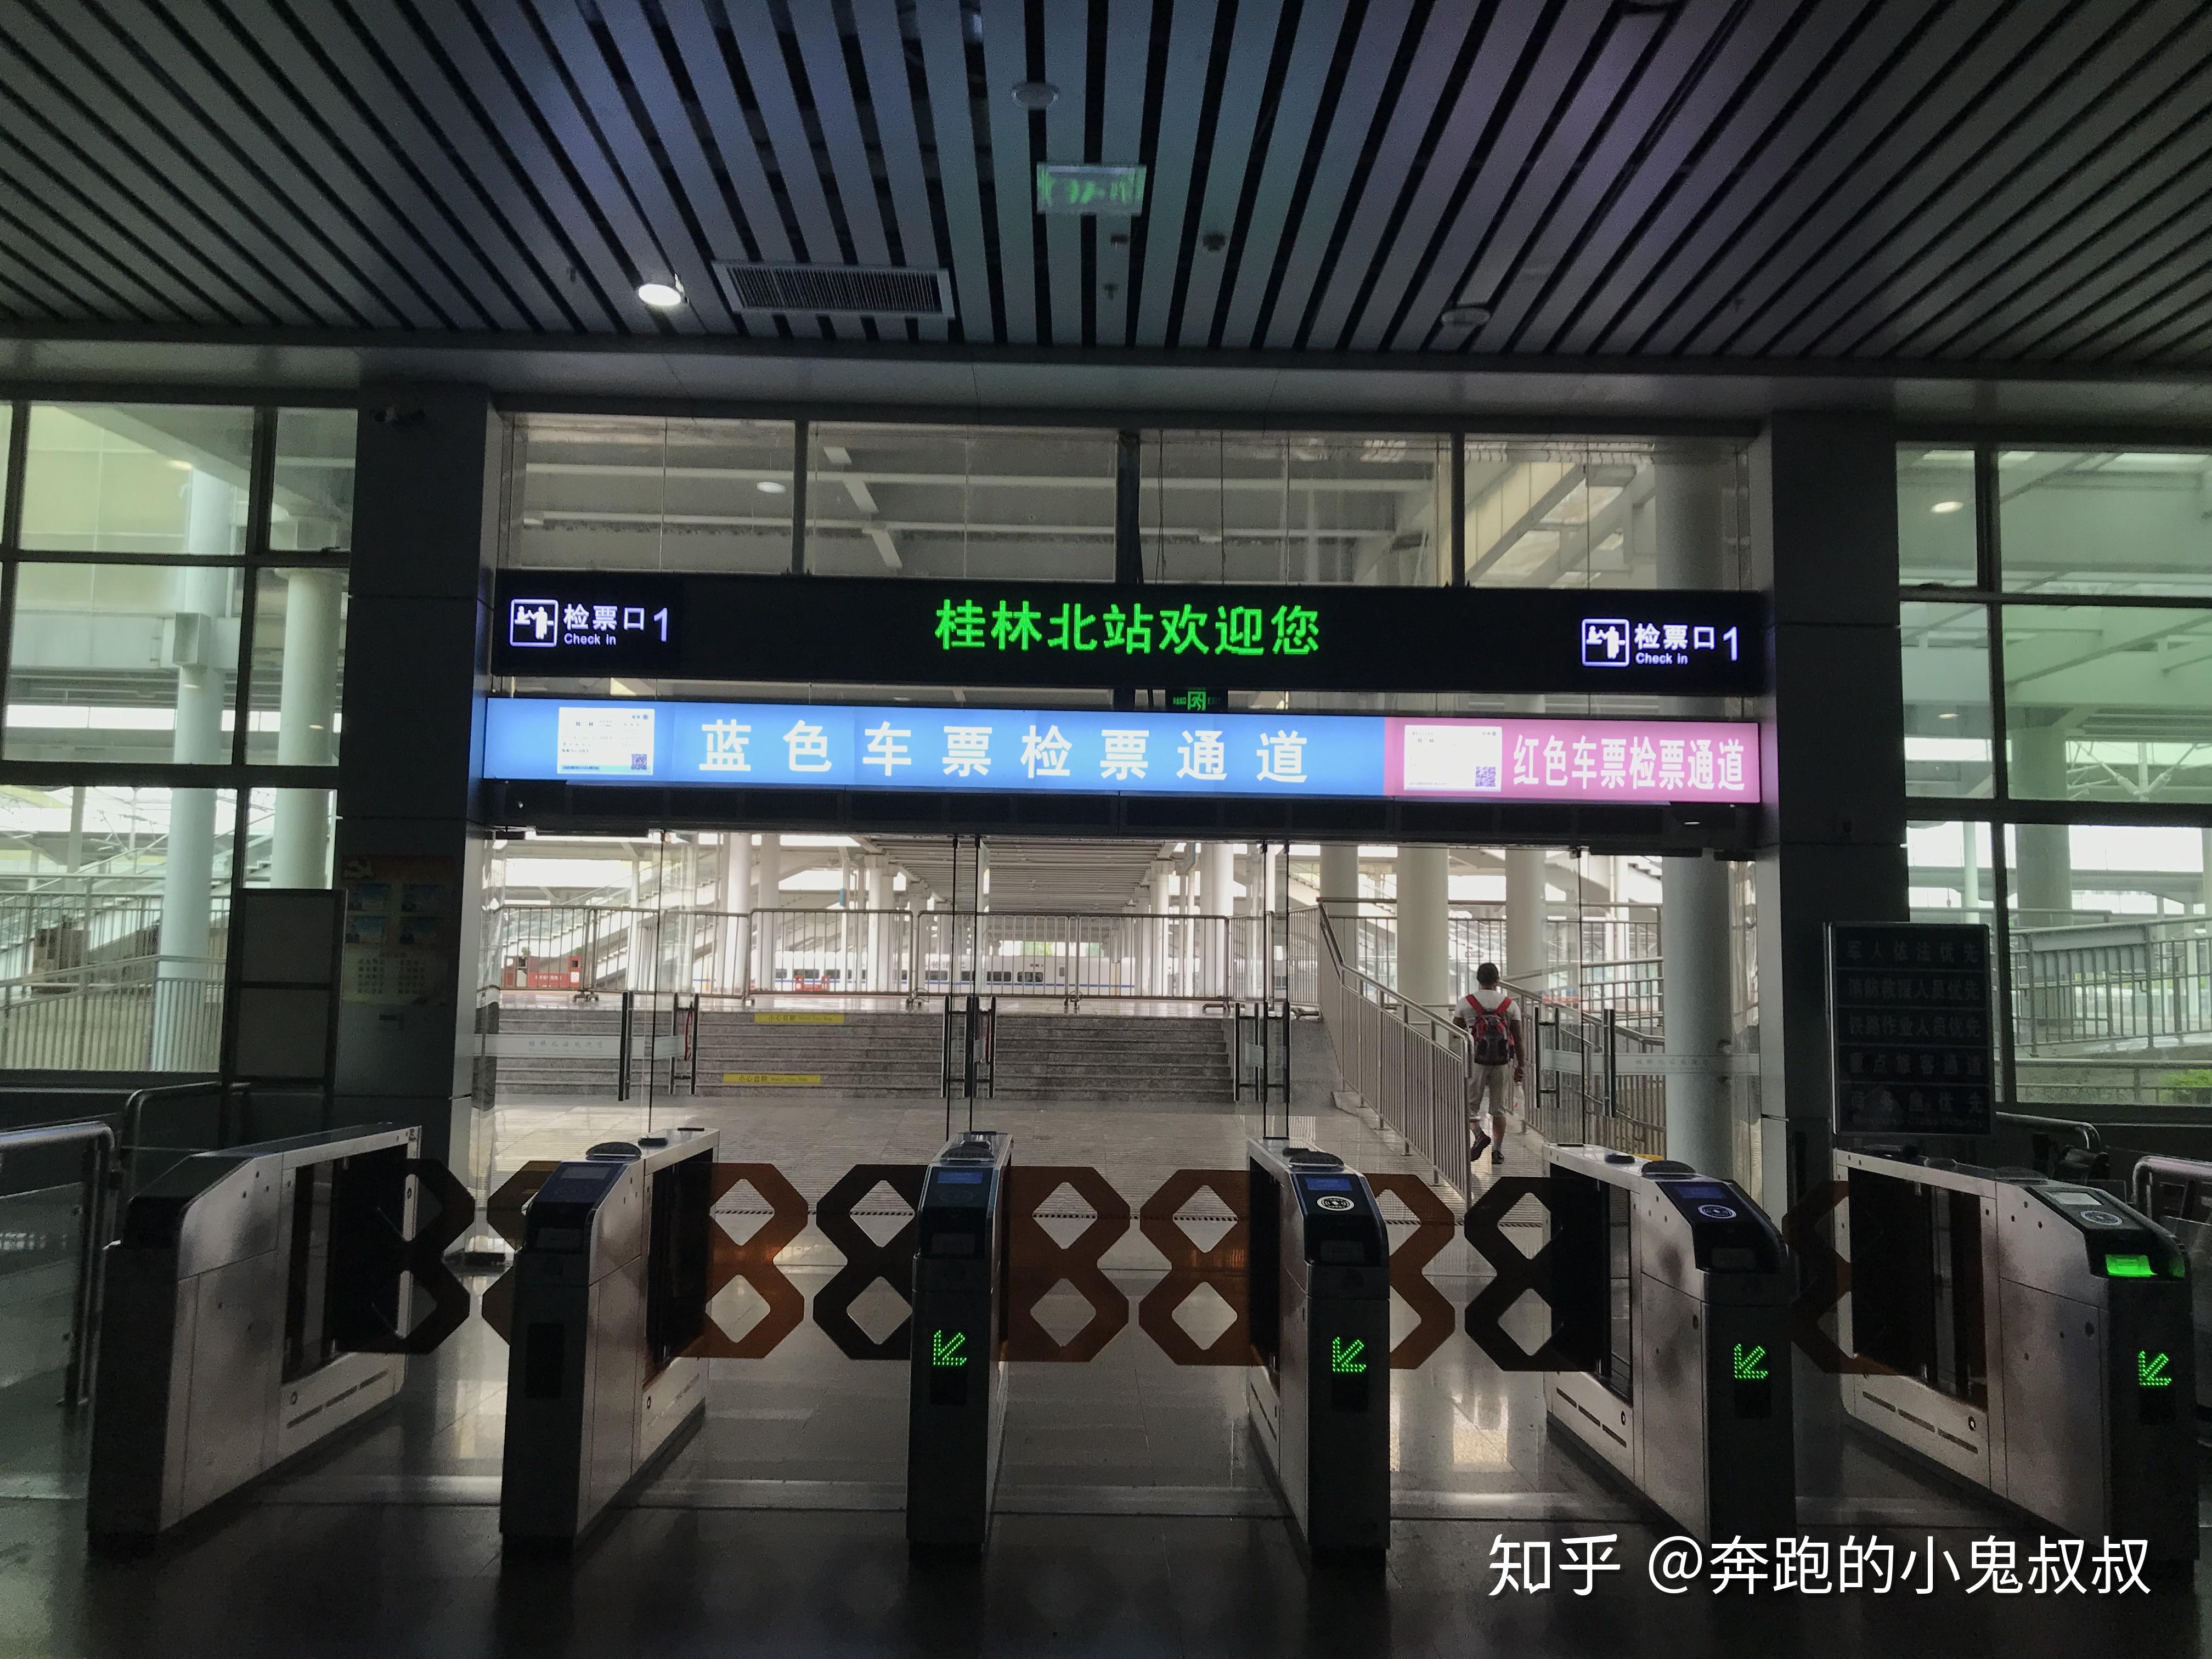 【铁道纪事】2019年5月11日桂林市桂林西站拍车记录 - 知乎